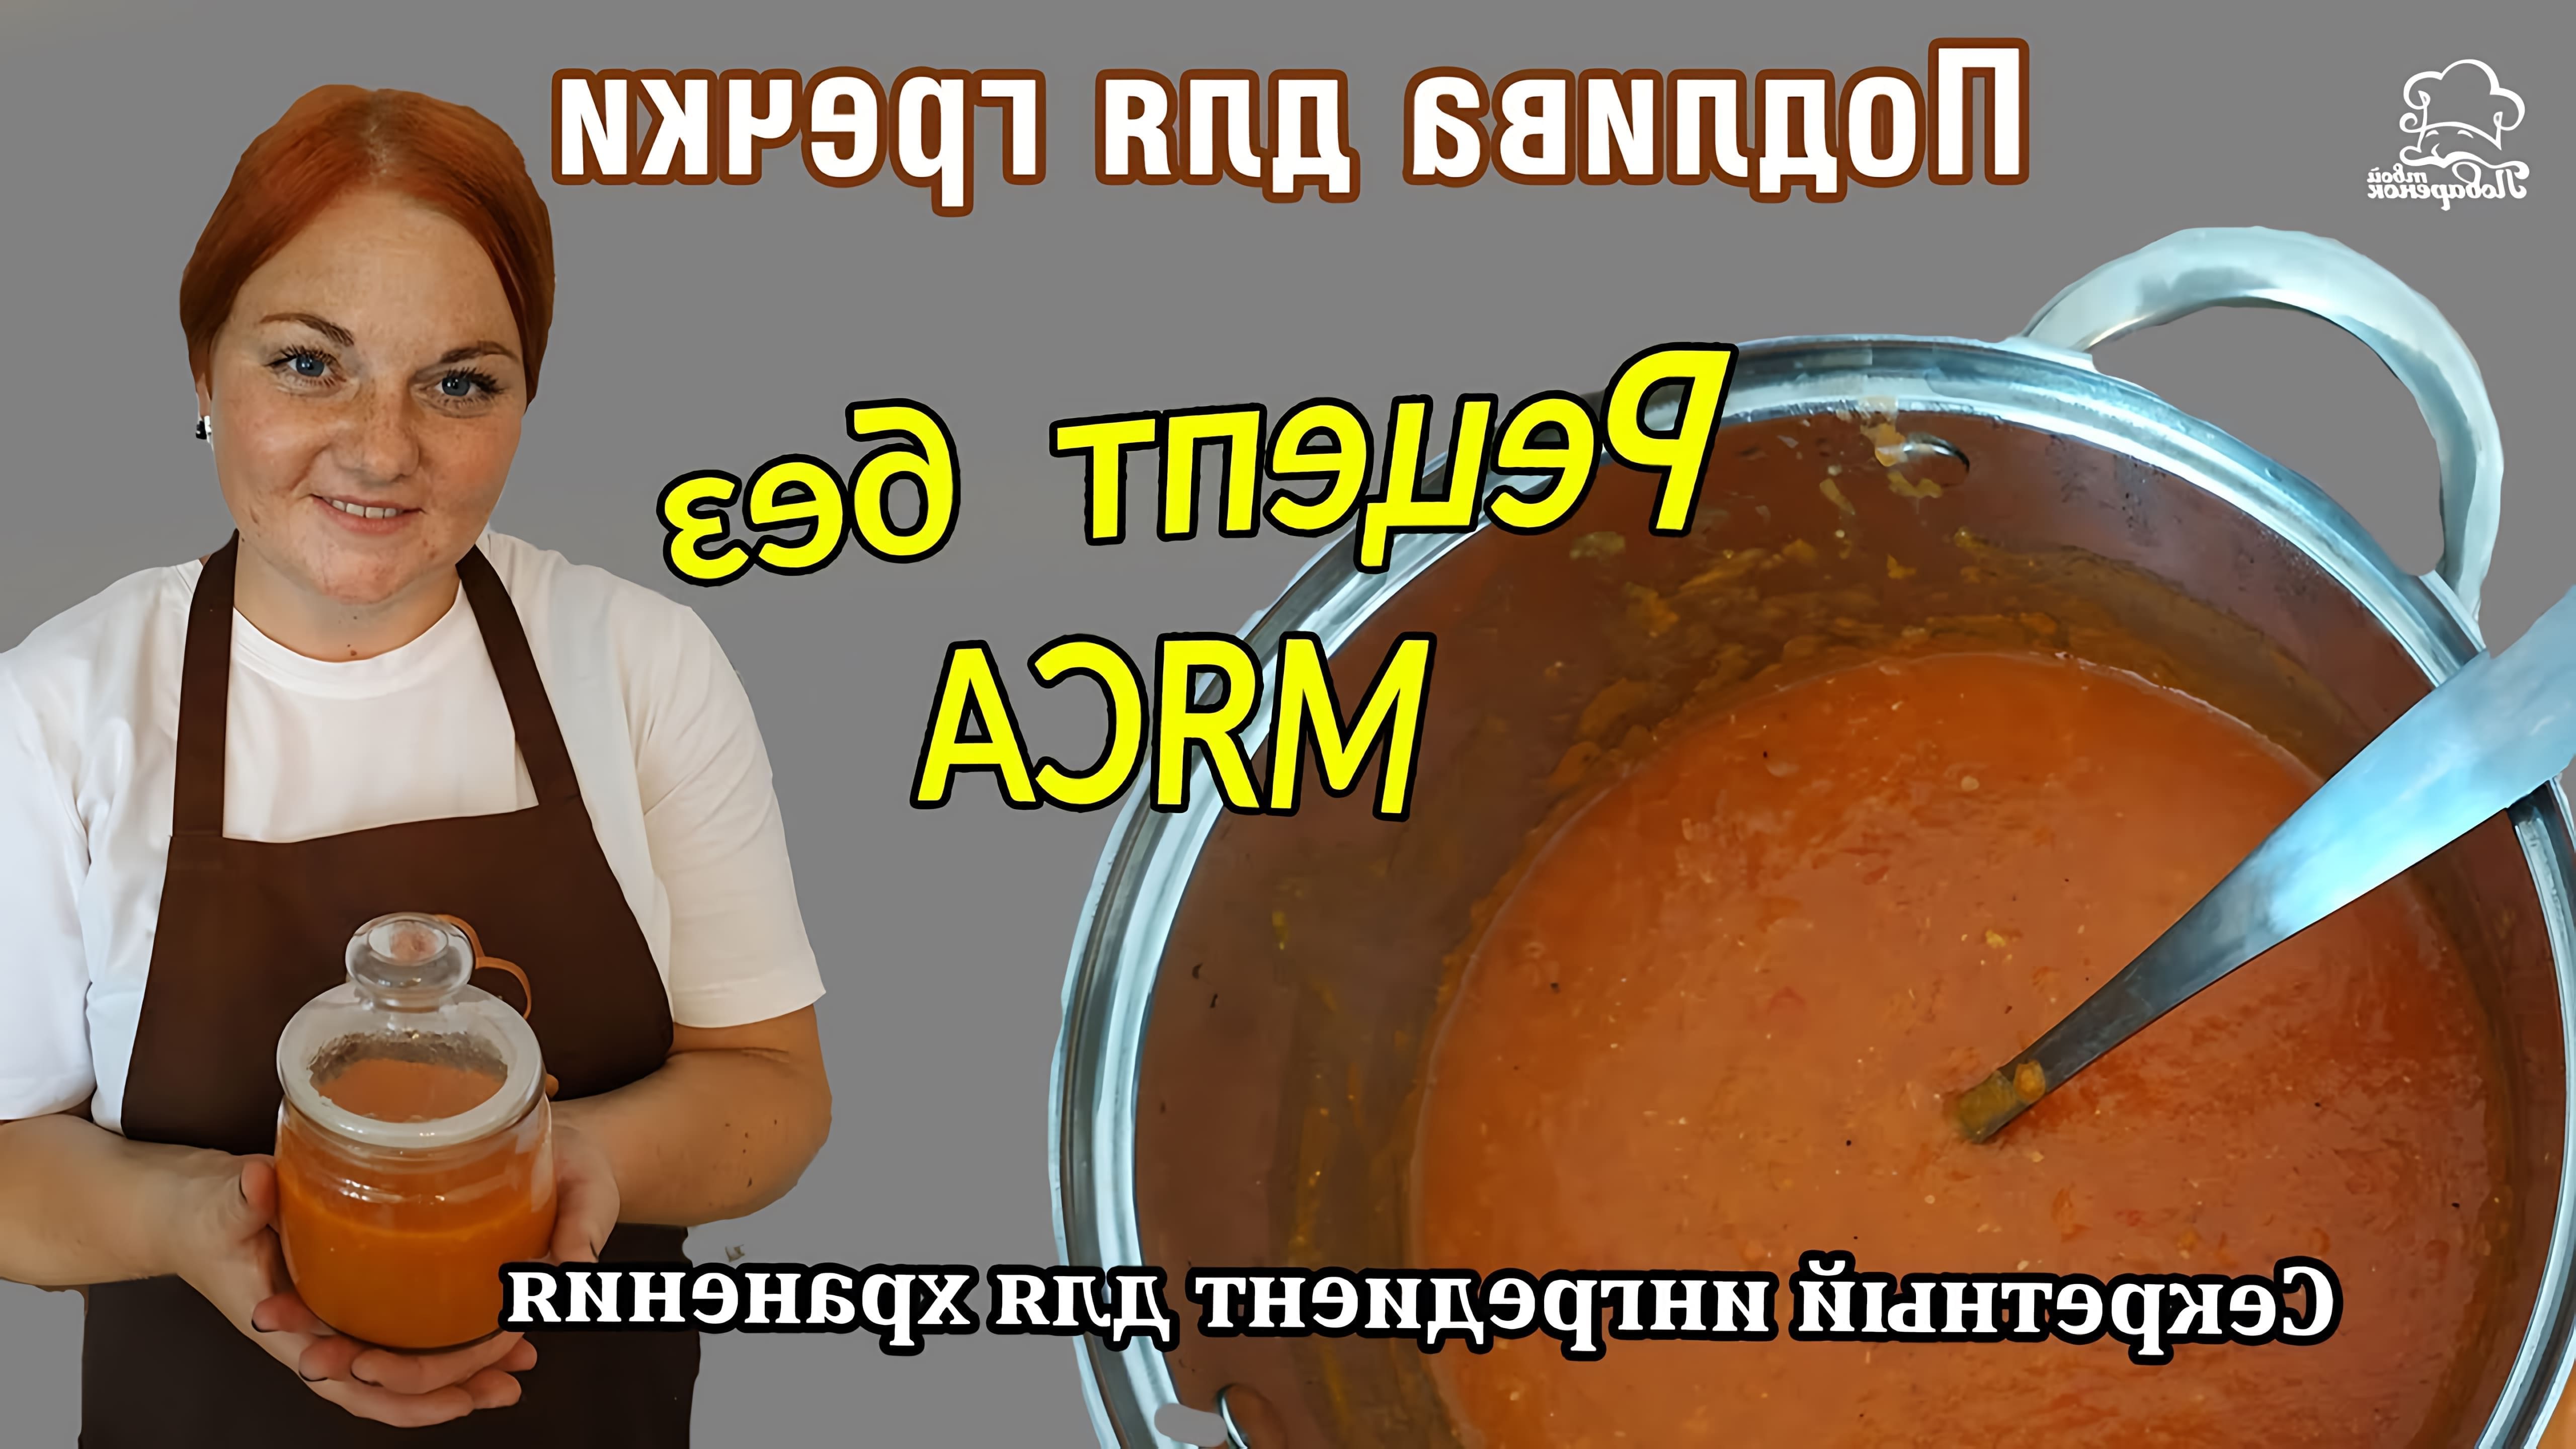 В этом видео демонстрируется рецепт приготовления вкусной и универсальной подливы для гречки с использованием свежих овощей, томатной пасты, муки и других ингредиентов